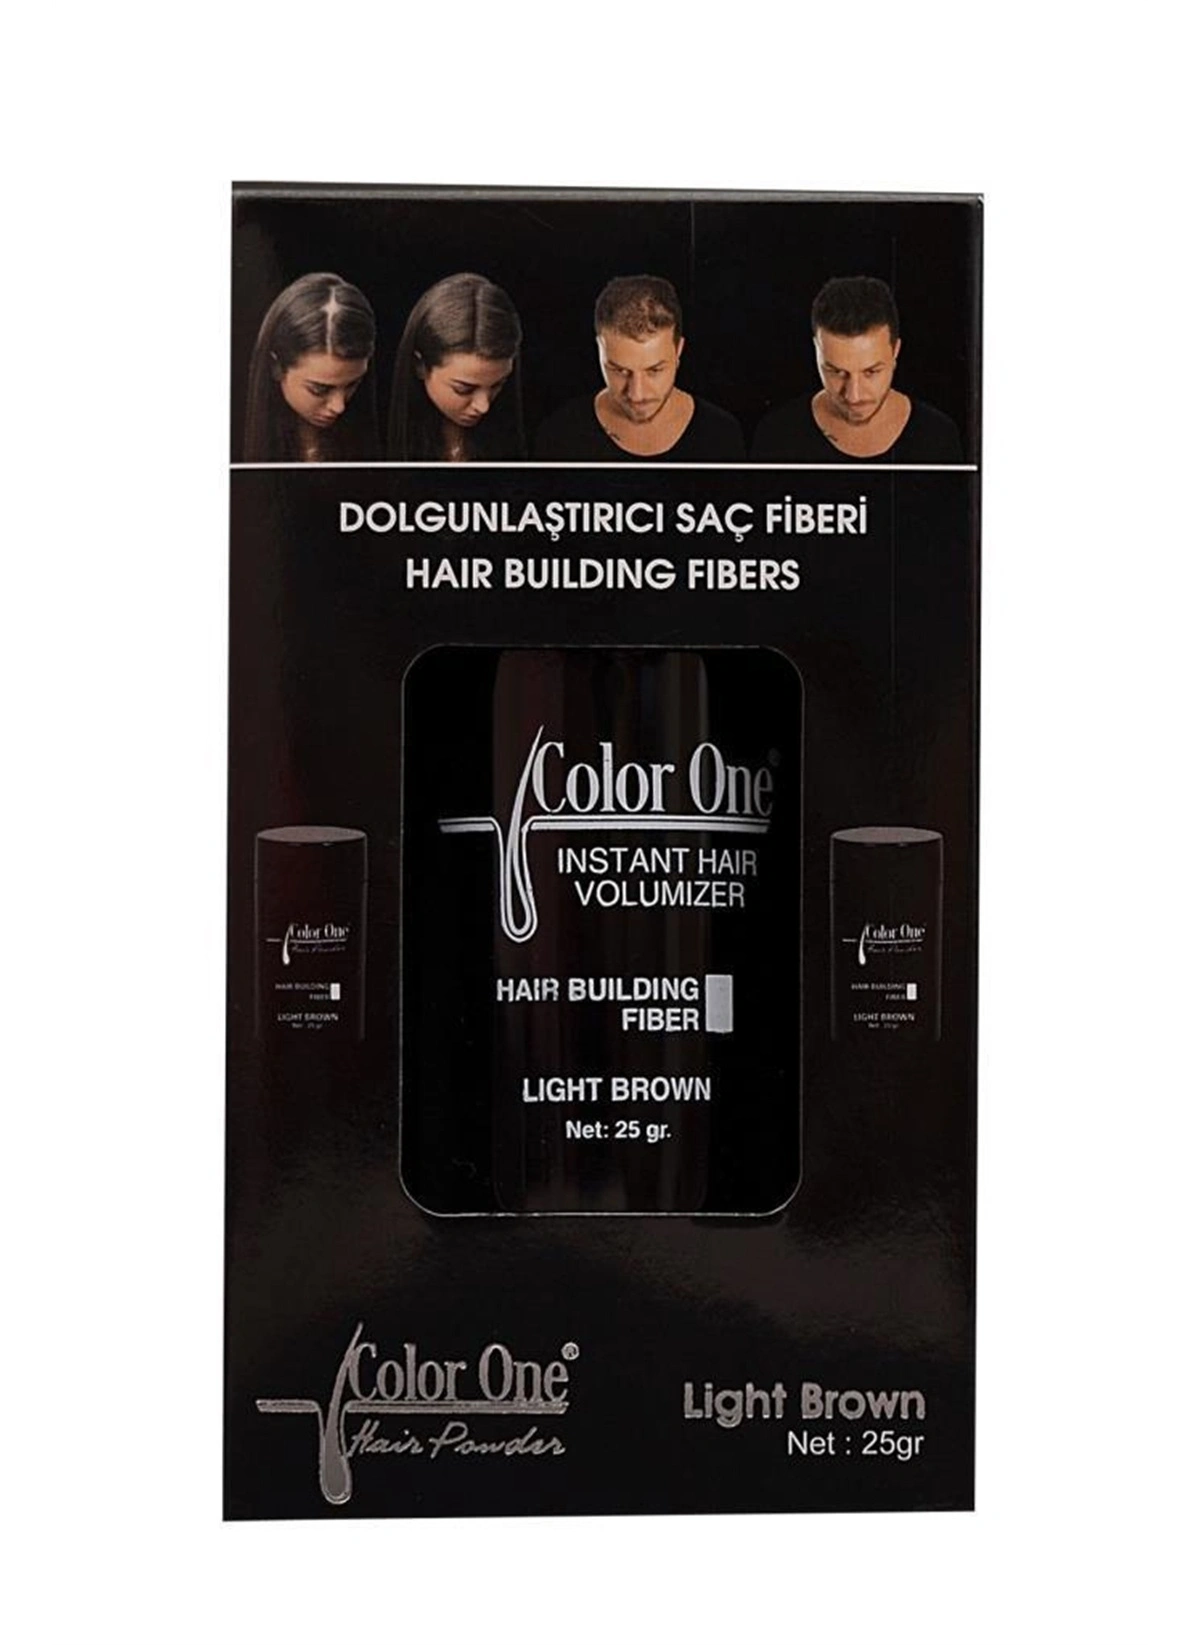 Color One Dolgunlaştırıcı Saç Fiberi Açık Kahve Hair Building Fibers Light Brown 25 gr